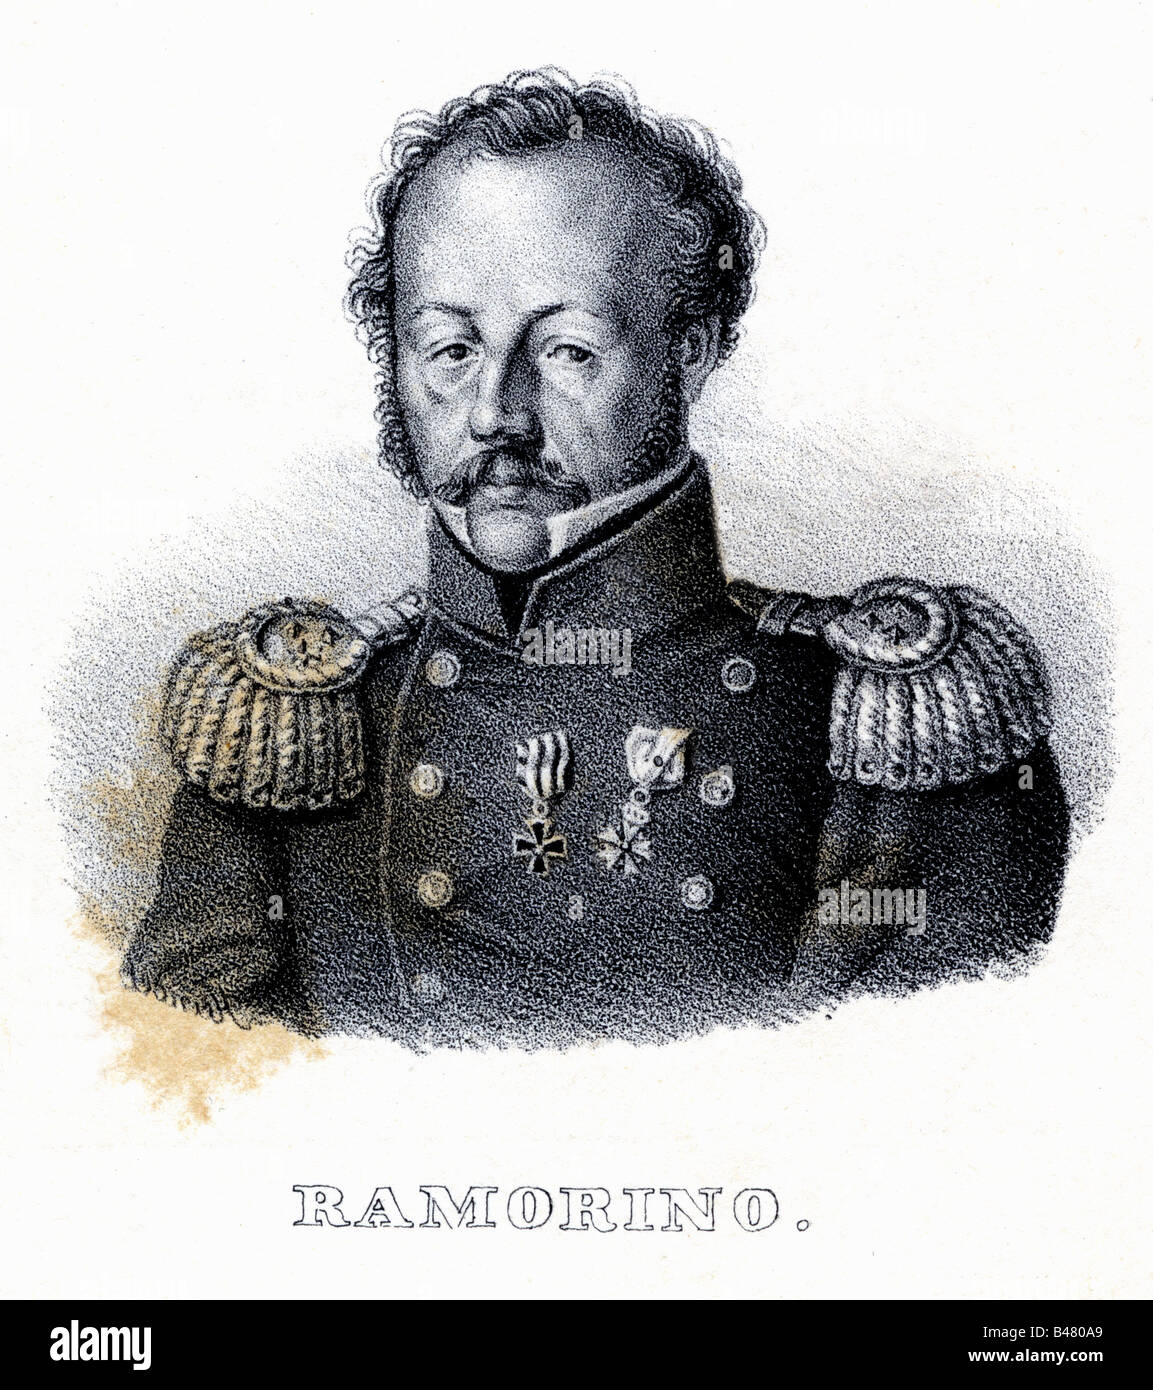 Ramorino, Girolamo, 1792 - 22.5.1849, Italiano generale, ritratto, litografia, Italia, 19th secolo, Foto Stock